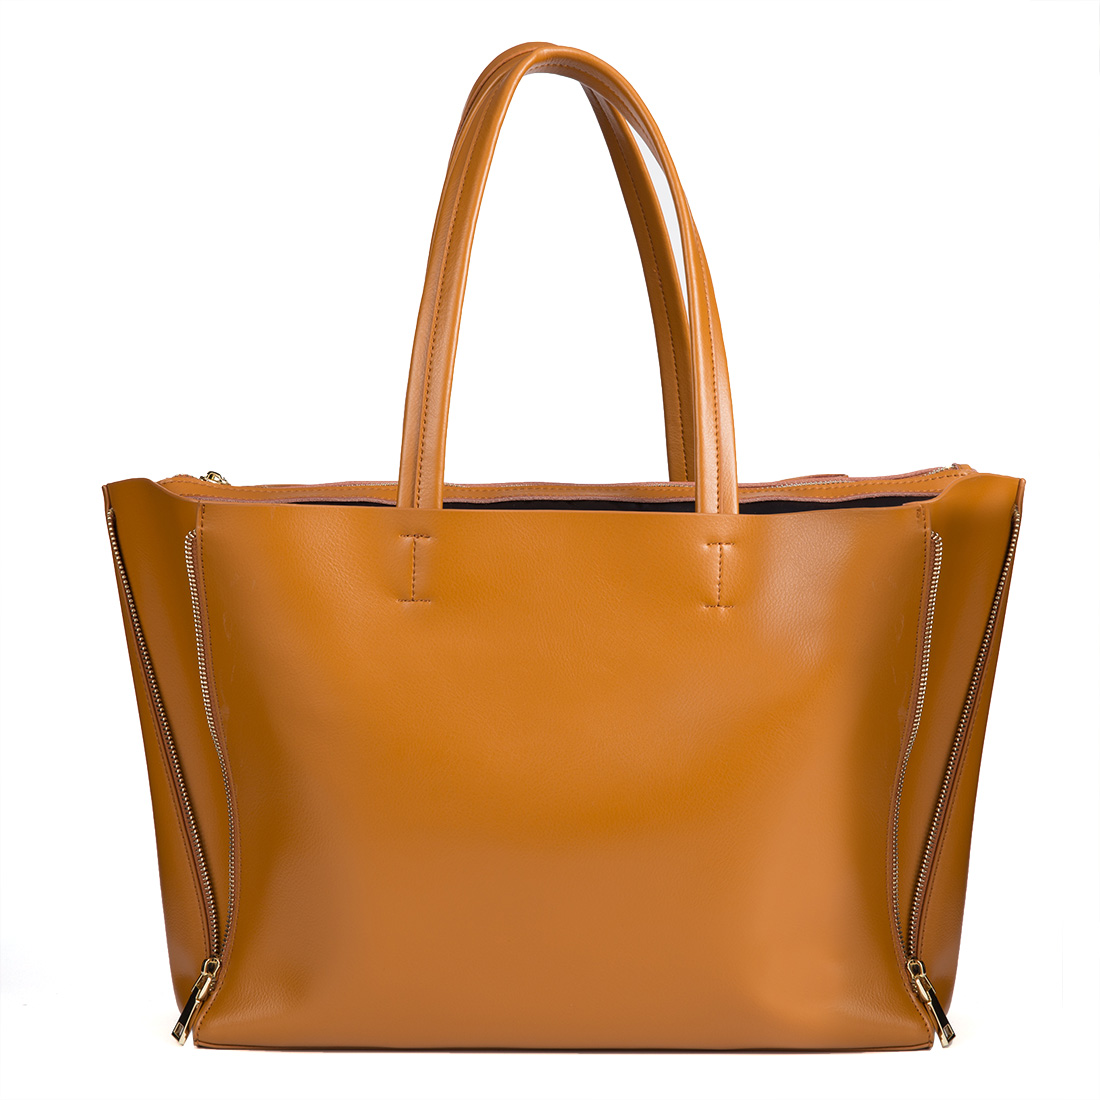 Kattee Handbags. Kattee Women Soft Genuine Leather Totes Shoulder Bag ...